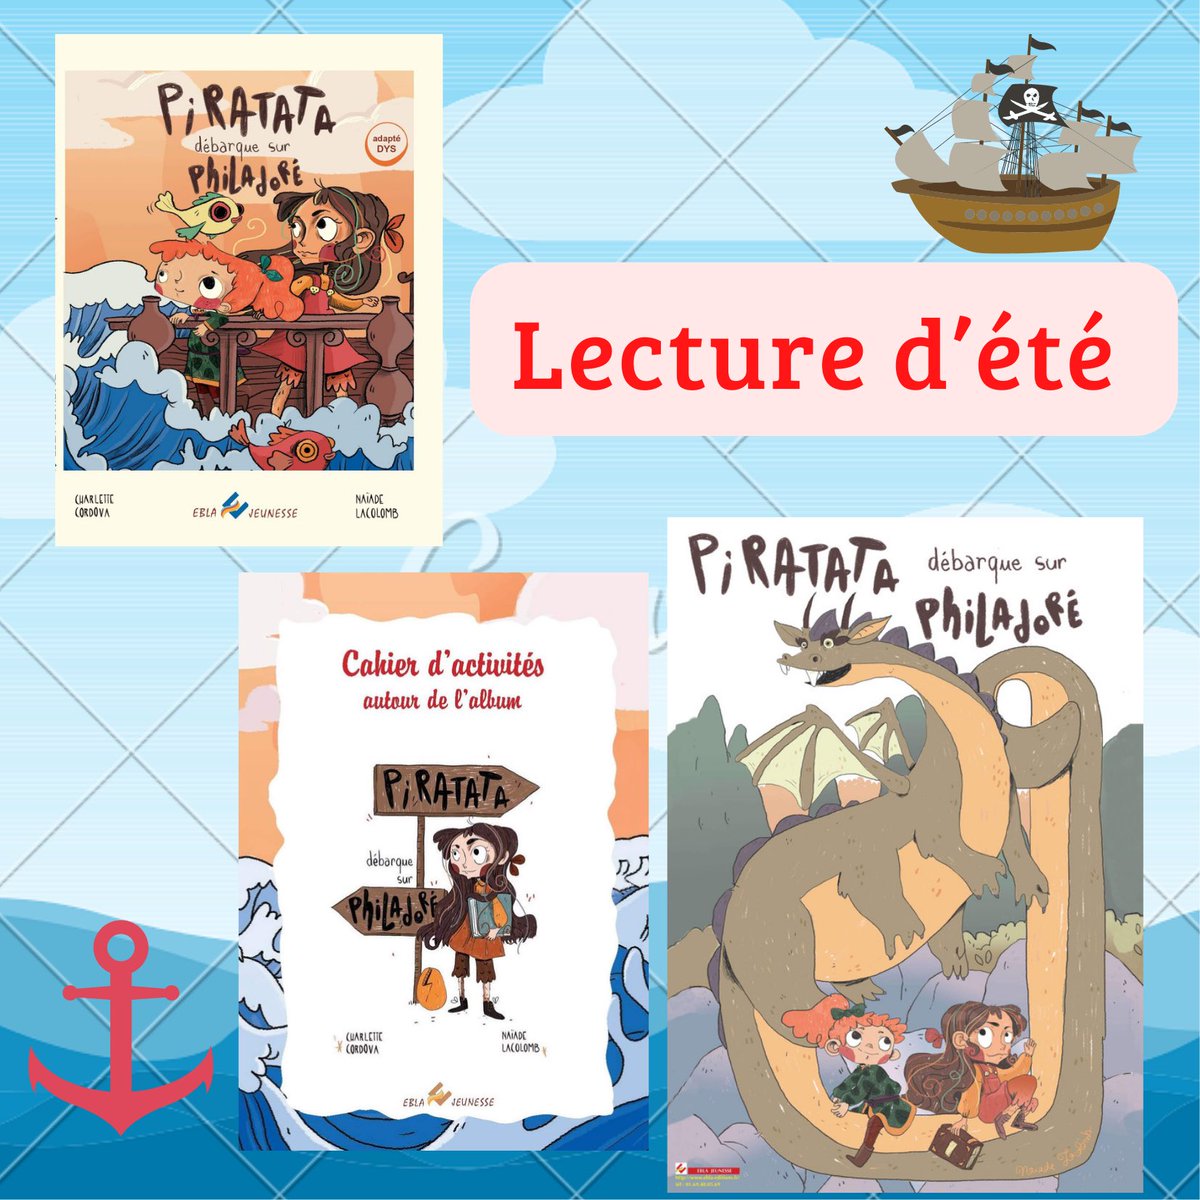 Lecture d’été Pour les enfants de 7 à 9ans et adapté au #dys. Voici le lien: ebla-editions.fr/accueil/277-pi… #ete #summer #lecture #pirate #albumjeunesse #parent #summertime #summerreading #lecturedete